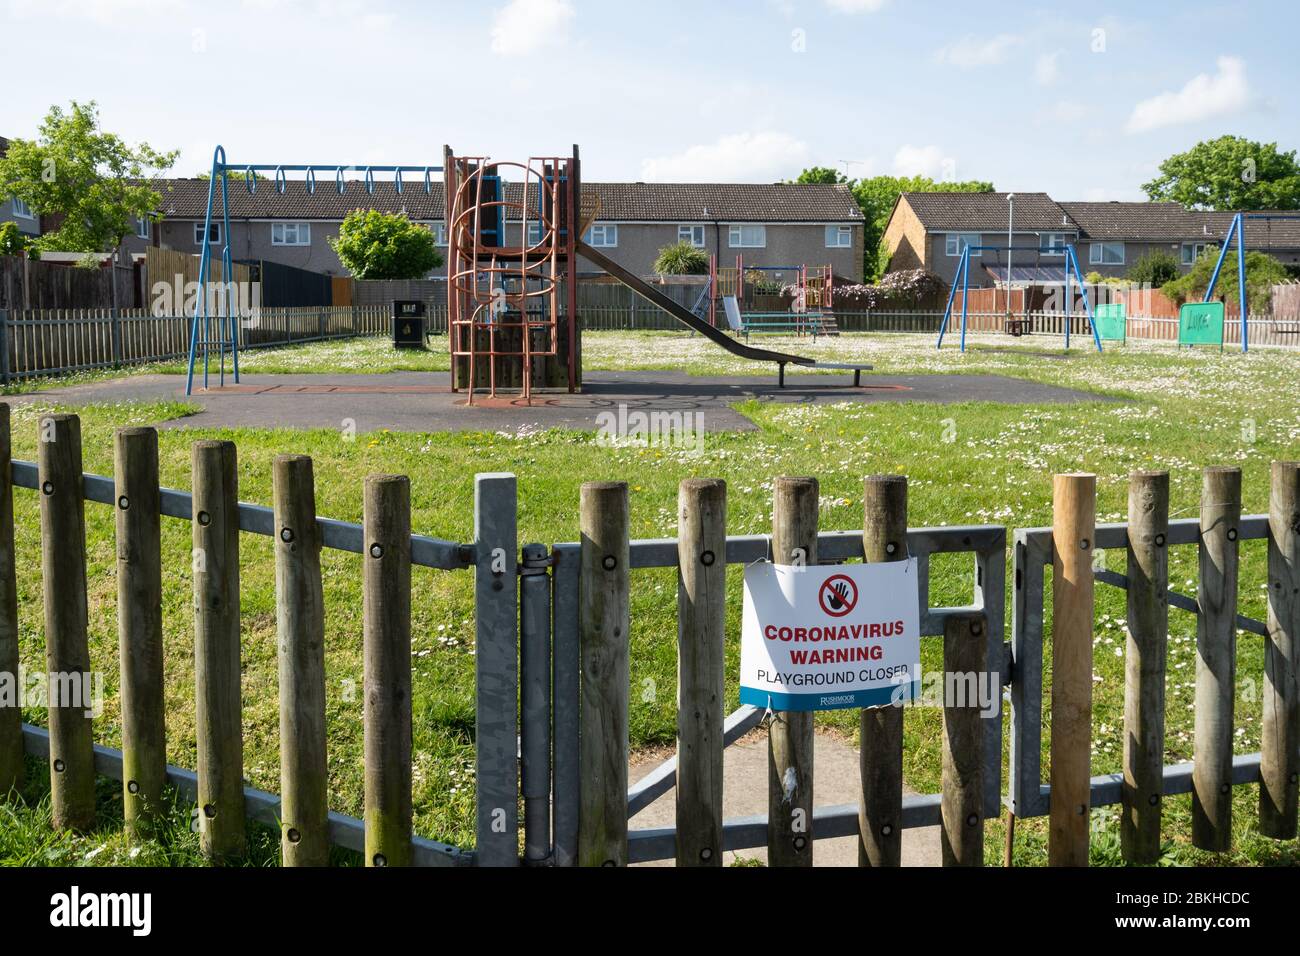 Terrain de jeux pour enfants avec un panneau fermé en raison du verrouillage pandémique du coronavirus covid-19 en 2020, au Royaume-Uni Banque D'Images